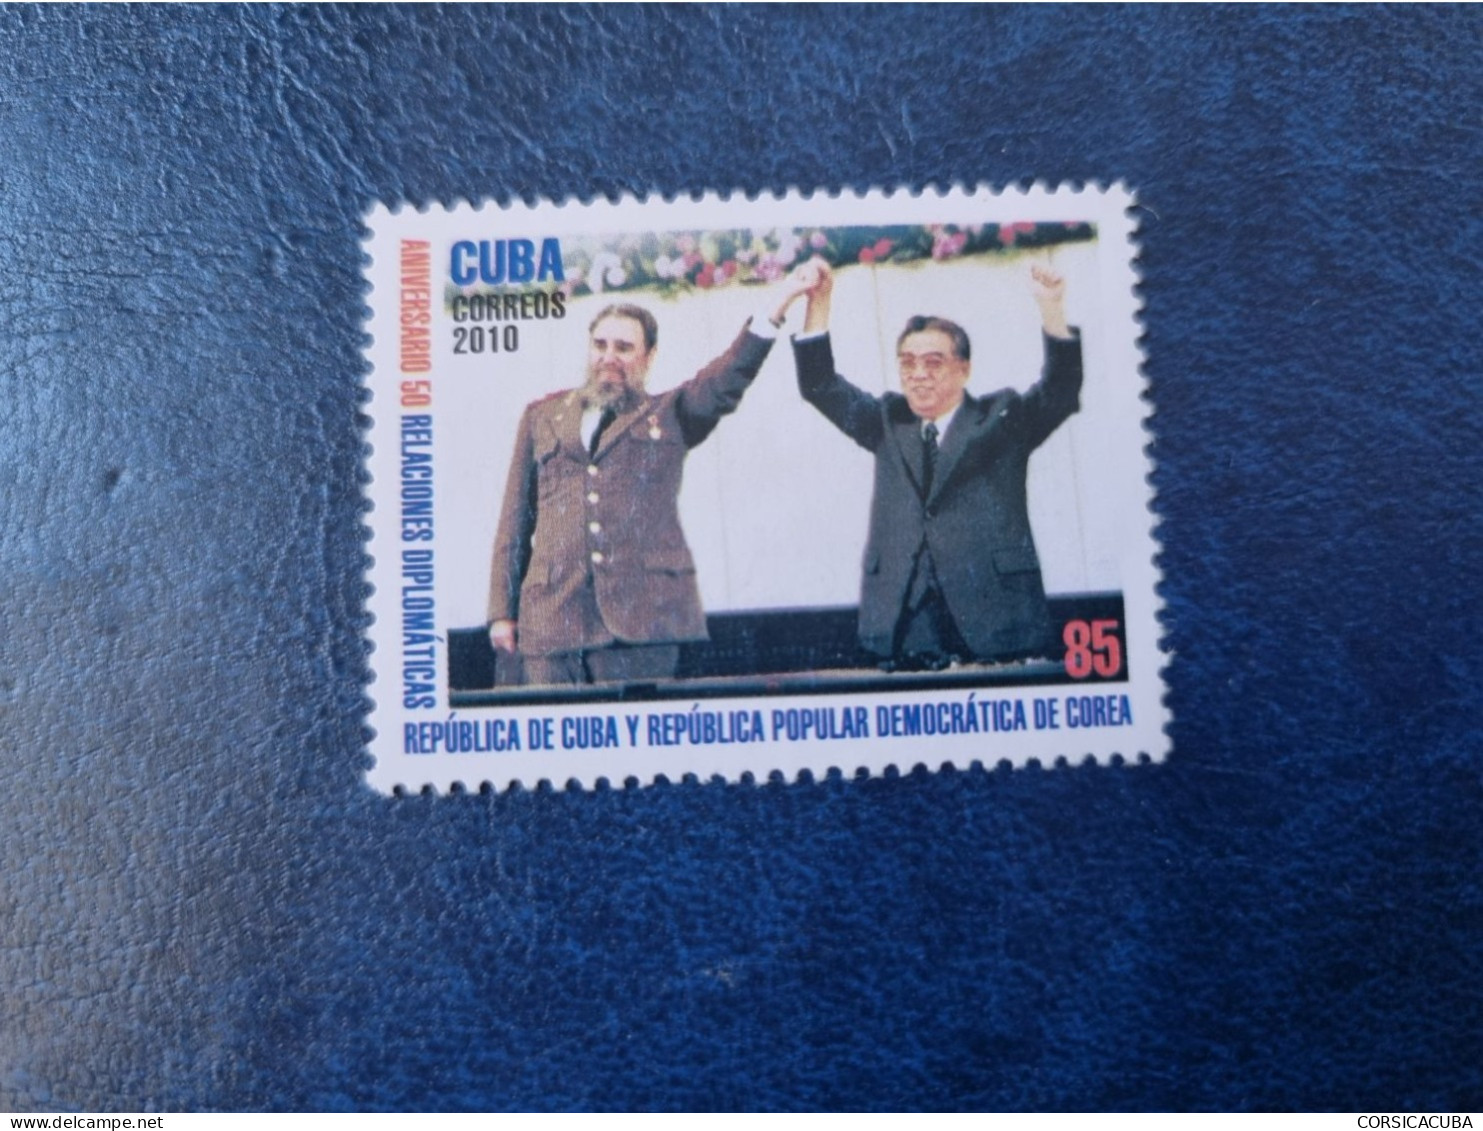 CUBA  NEUF 2010  RELACIONES  DIPLOMATICAS  CUBA/REPUB. DEMO. DE  CORREA // PARFAIT  ETAT  // 1er  CHOIX //sans Gomme - Unused Stamps